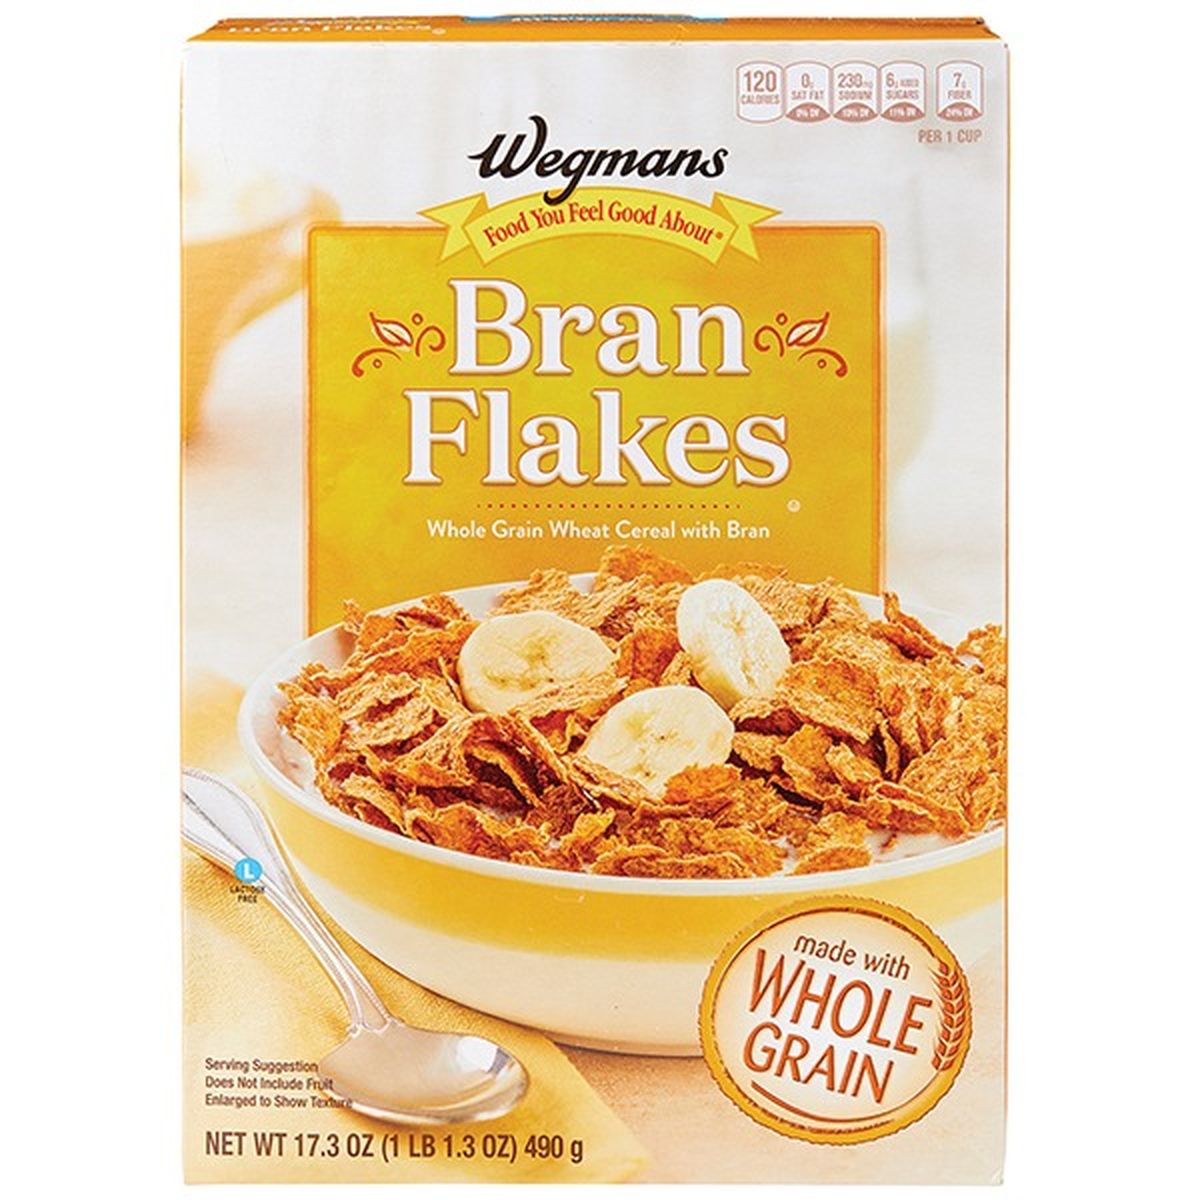 Calories in Wegmans Bran Flakes Cereal